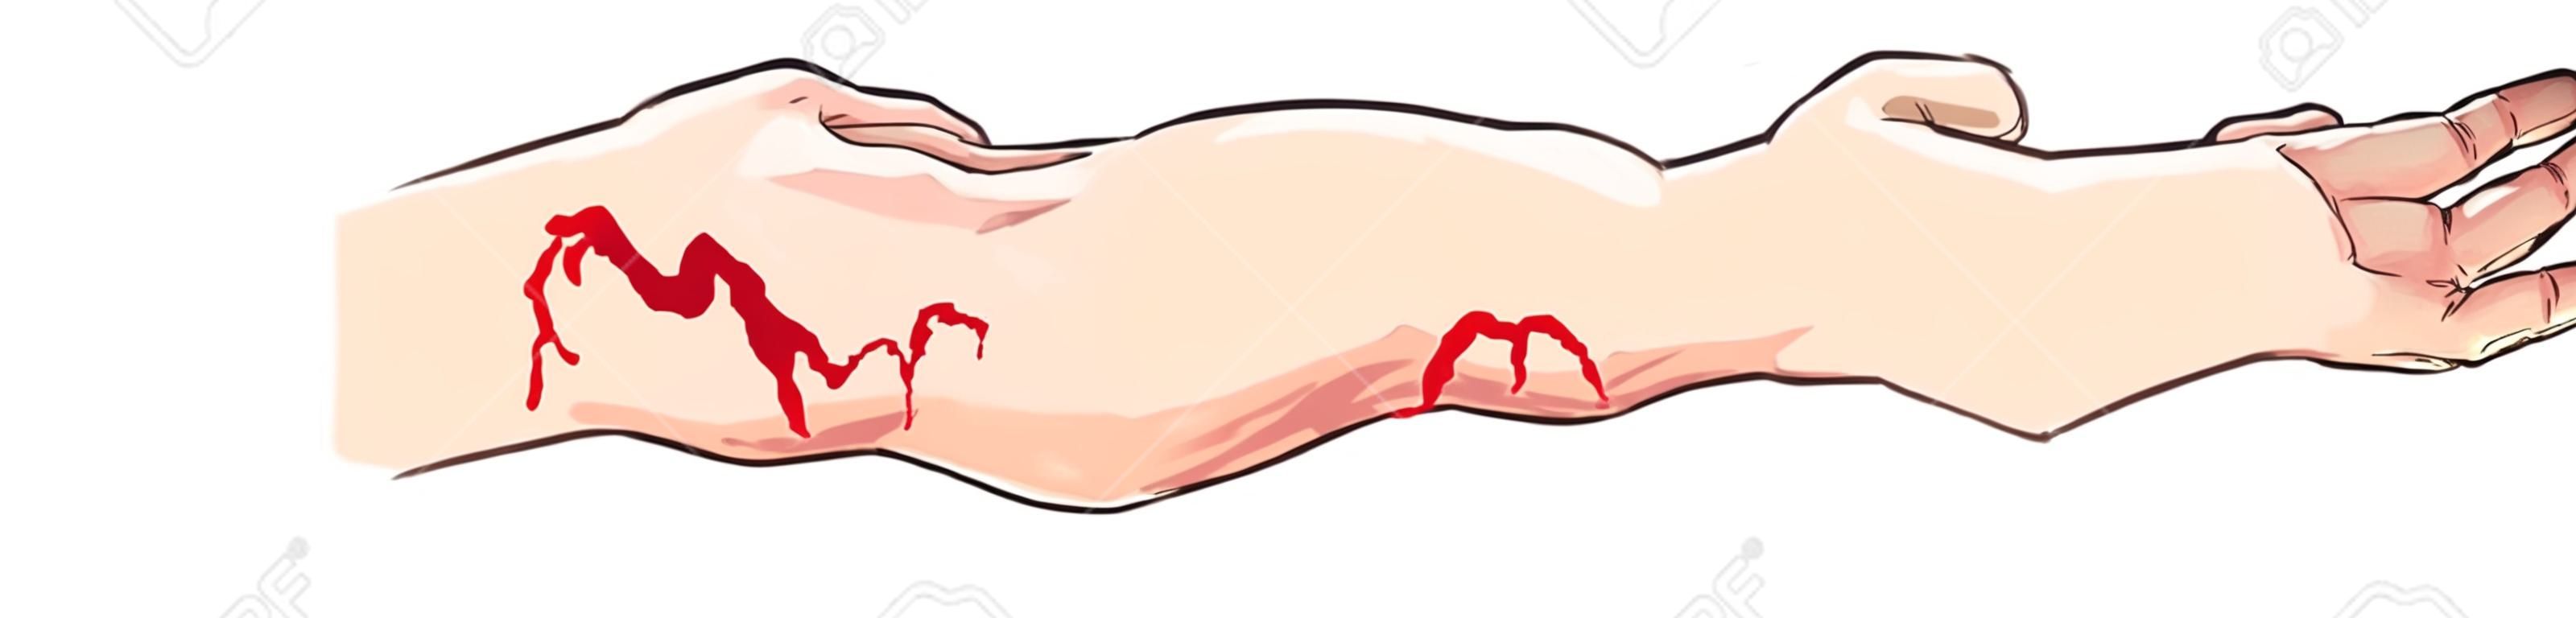 ilustracji wektorowych z tętniczych i żylnych krwawienia